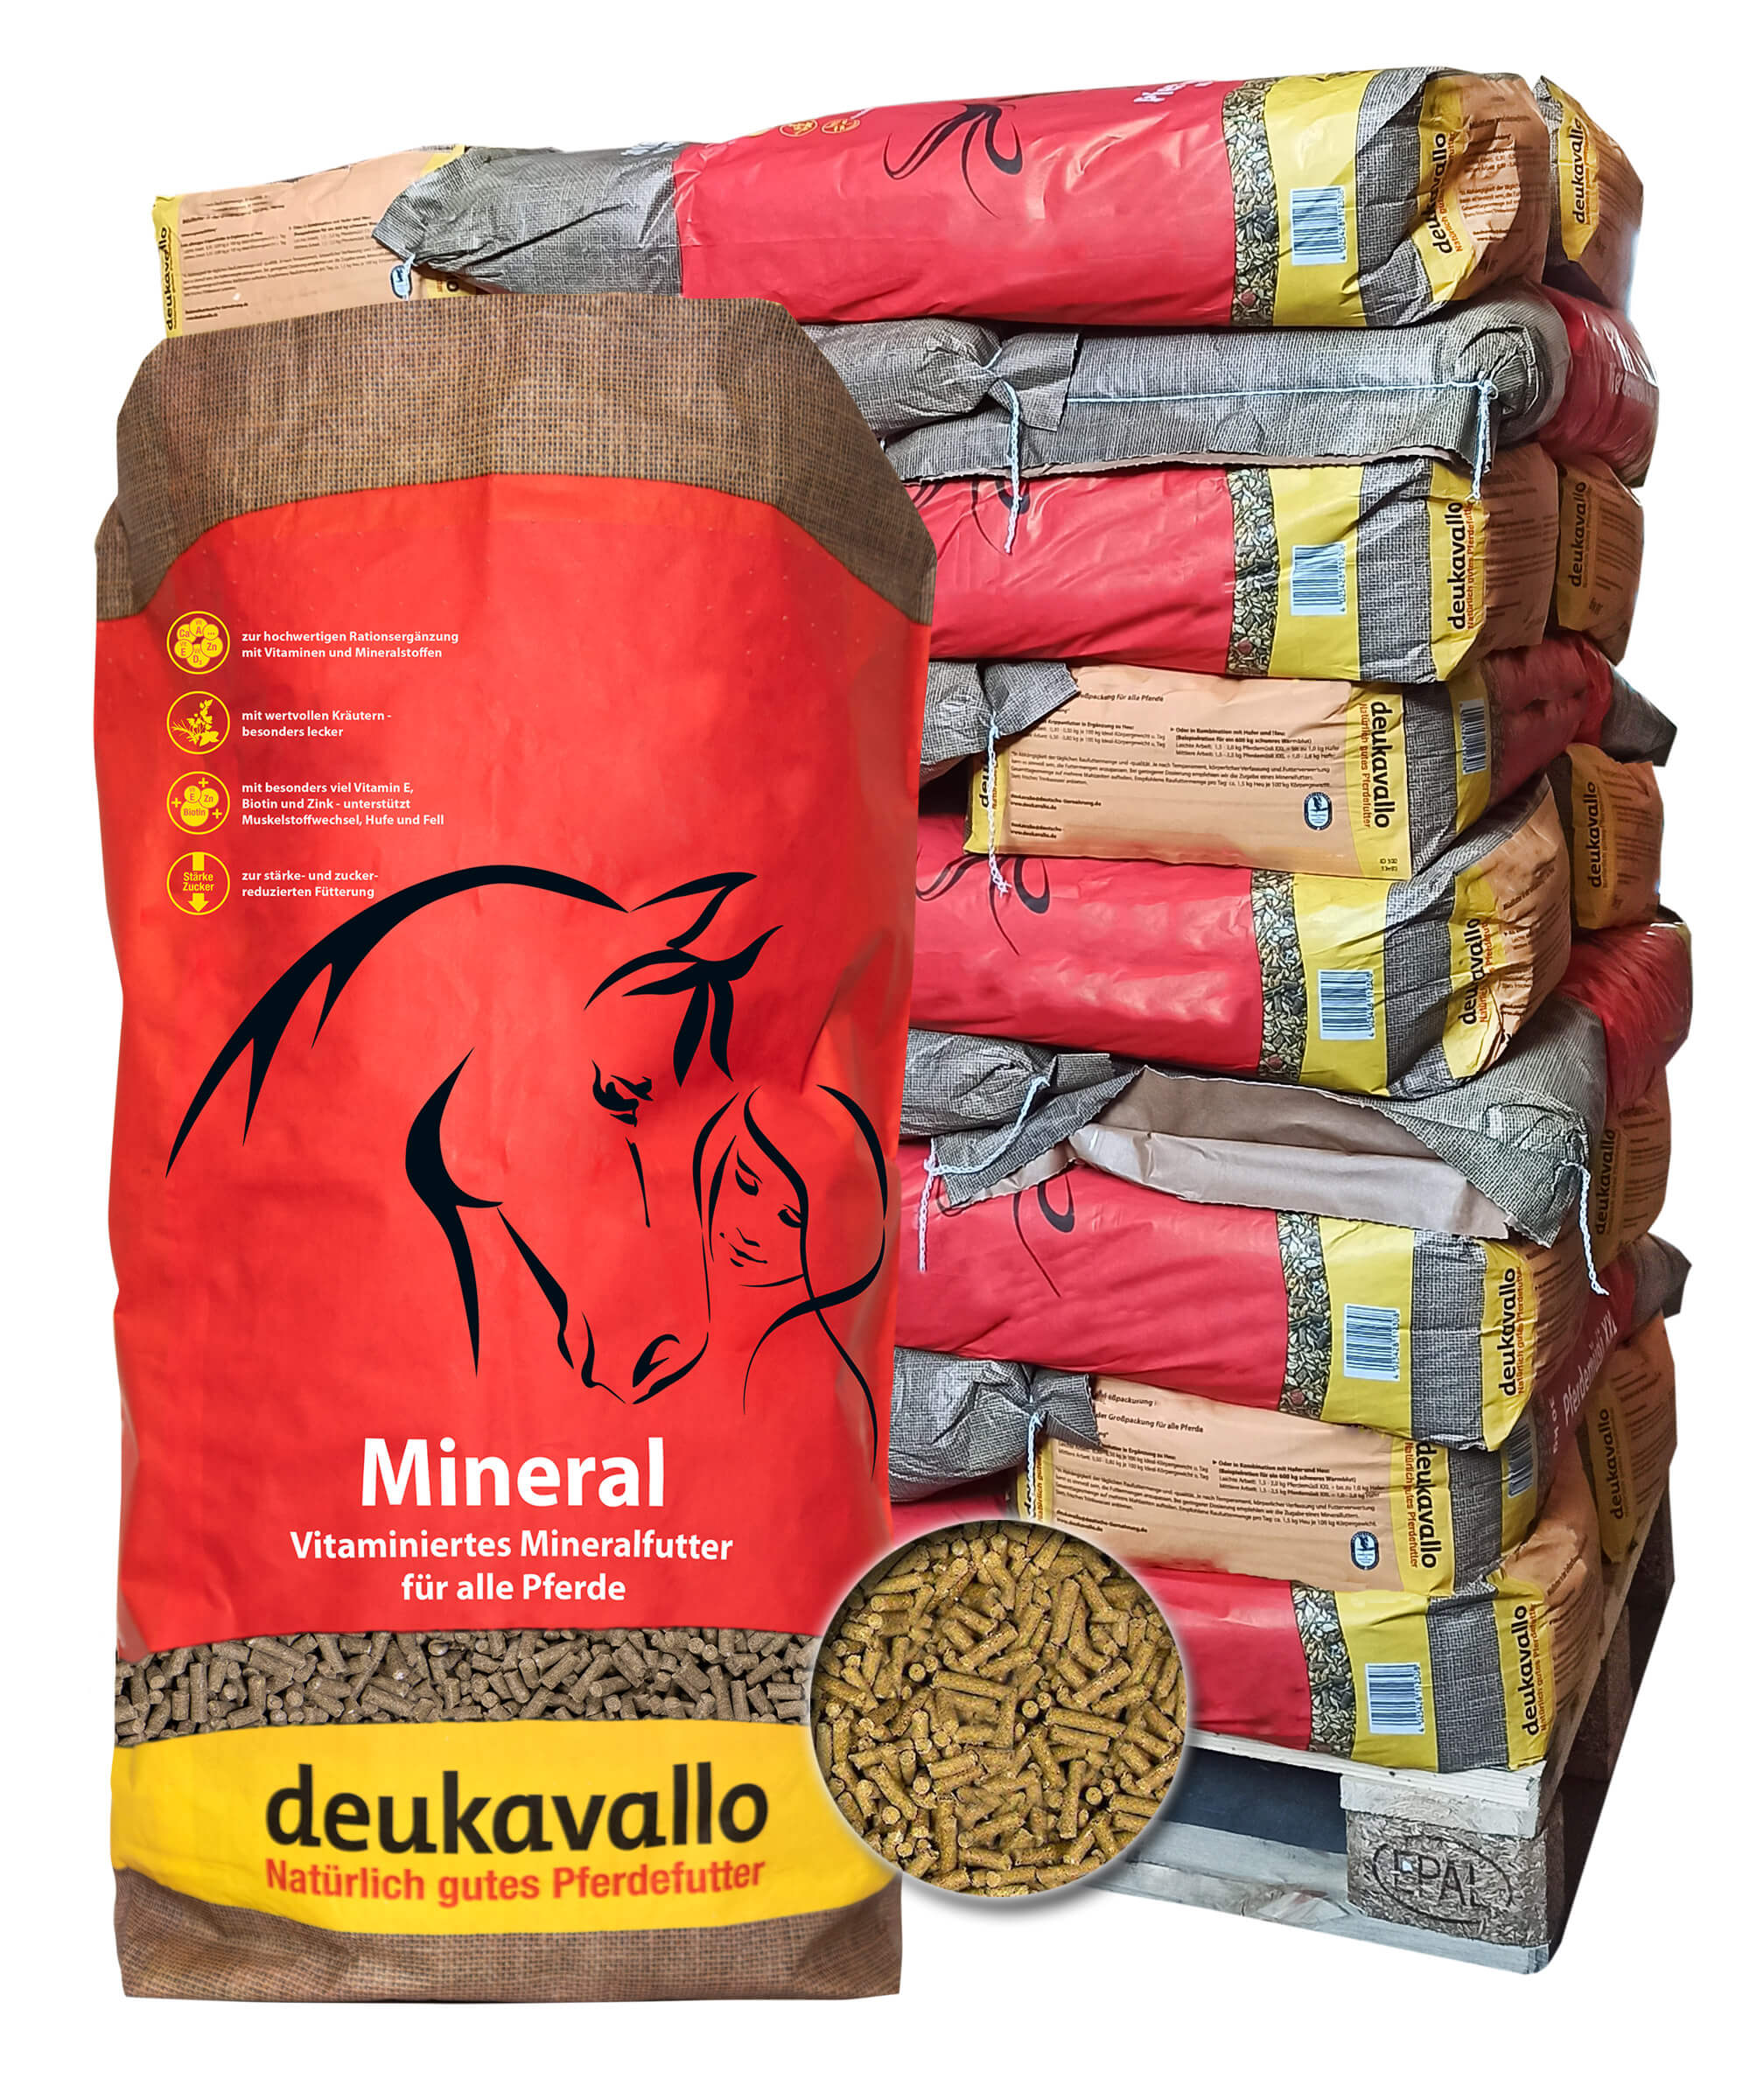 DEUKAVALLO Mineral das schmackhafte Mineralfutter für Pferde - 1 Palette